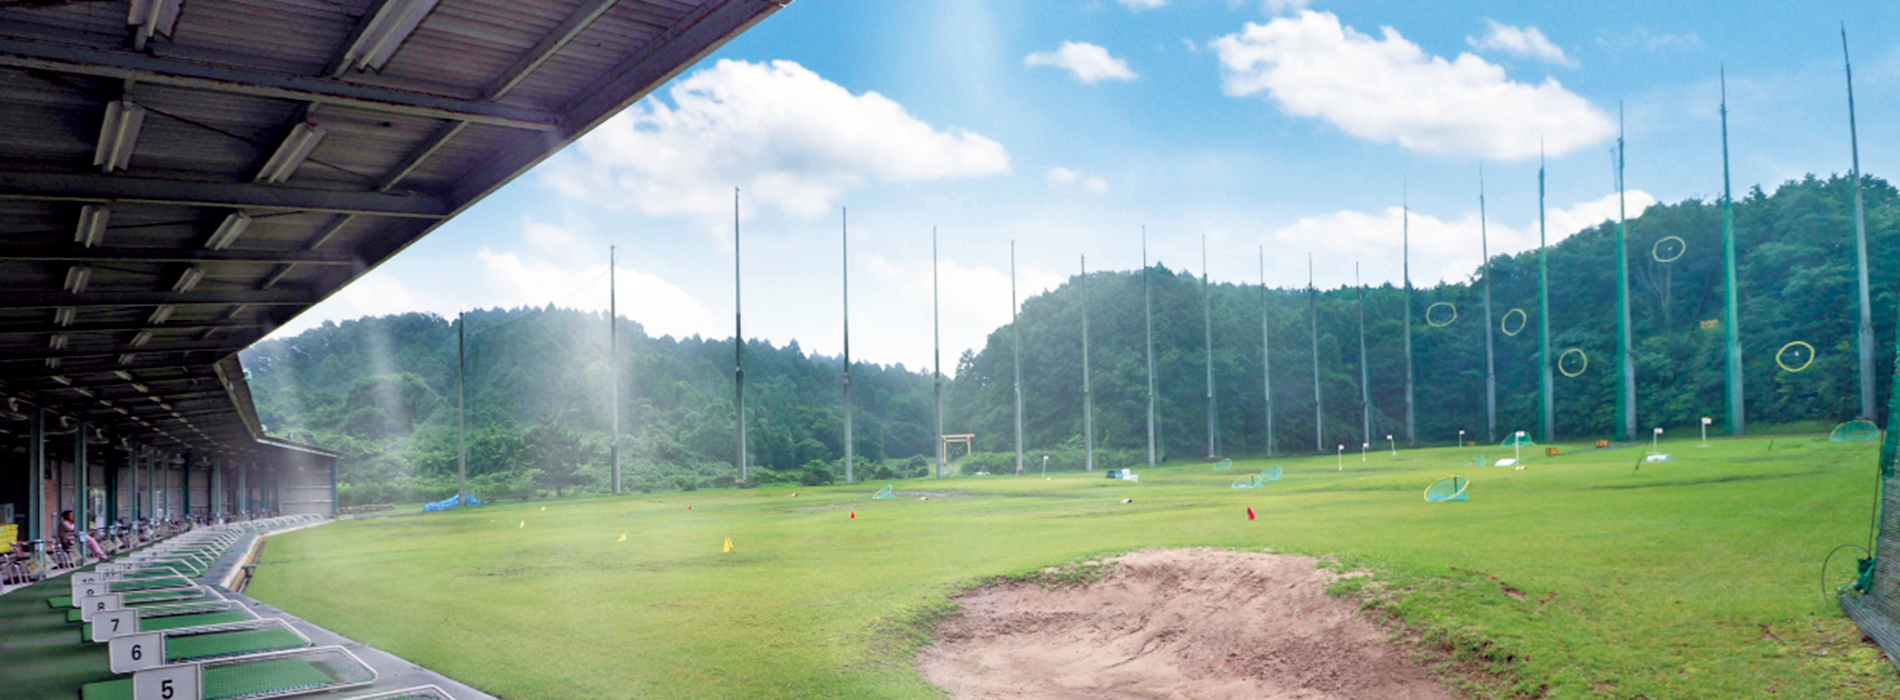 低料金でアットホームなゴルフ練習場・御伊勢山ゴルフガーデン